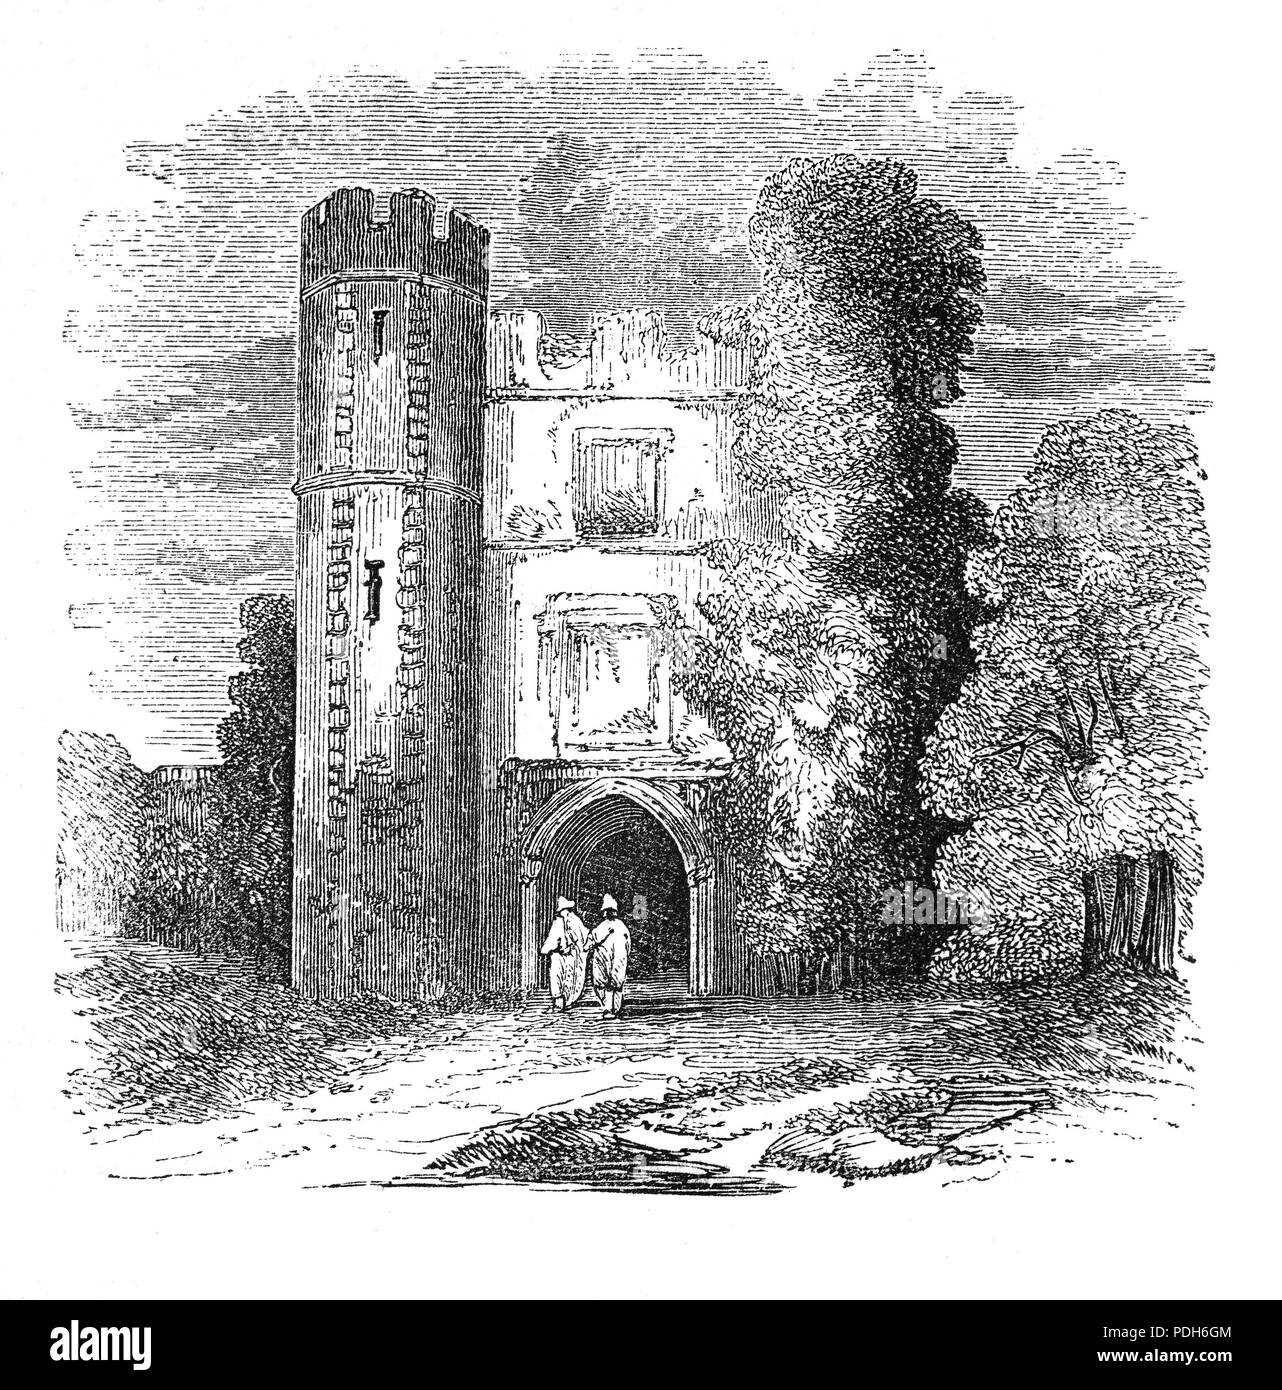 Cowdray ruiné maison a été l'un des grandes maisons Tudor. Le manoir fortifié a été construit entre 1273 et 1284 par Sir John Bohun de l'autre côté de la rivière de la ville de Midhurst, West Sussex debout sur la rive nord de la rivière Rother. En 1592, le petit-fils du vicomte Anthony-Maria Browne a hérité de Cowdray pendant ce temps, Guy Fawkes a été brièvement utilisé comme un valet de pied et le 2e vicomte a été brièvement emprisonné pour complicité dans la conspiration après restant à l'écart du Parlement le 5 novembre 1605 après un avertissement. La maison a été en grande partie détruit par un incendie le 24 septembre 1793. Banque D'Images